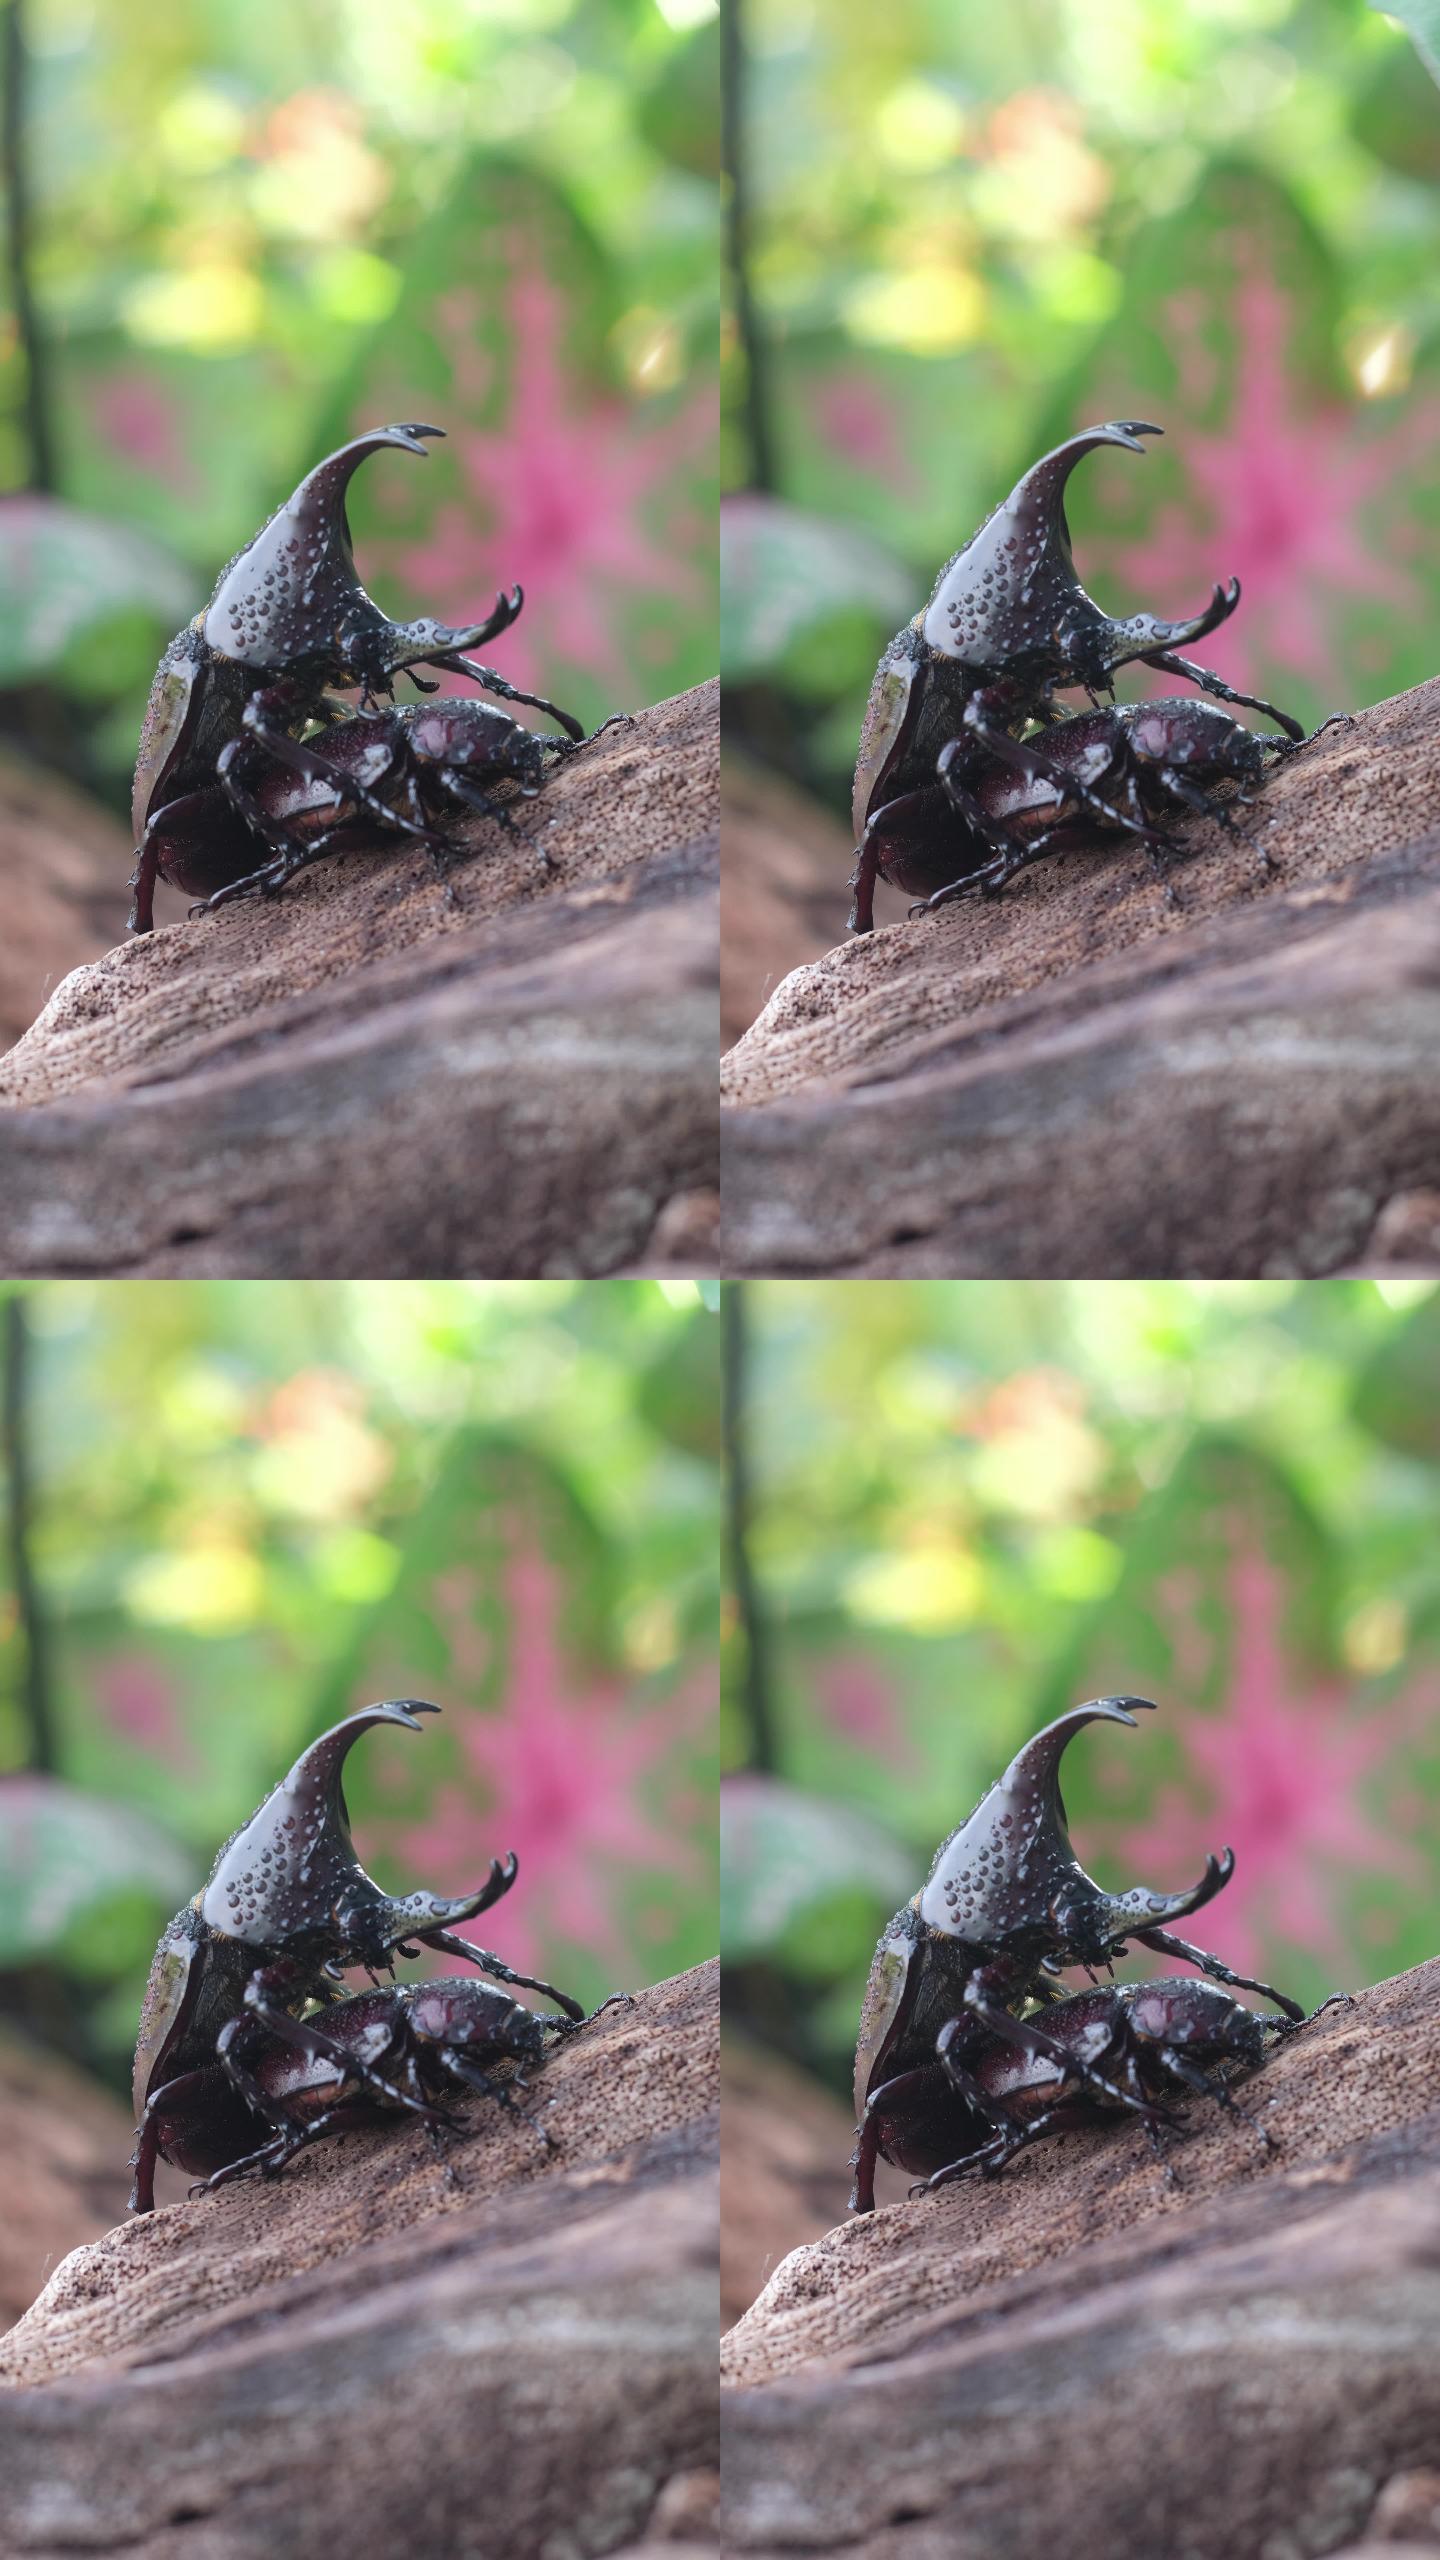 雄性犀牛甲虫会坚定地爱抚雌性犀牛甲虫以进行交配。